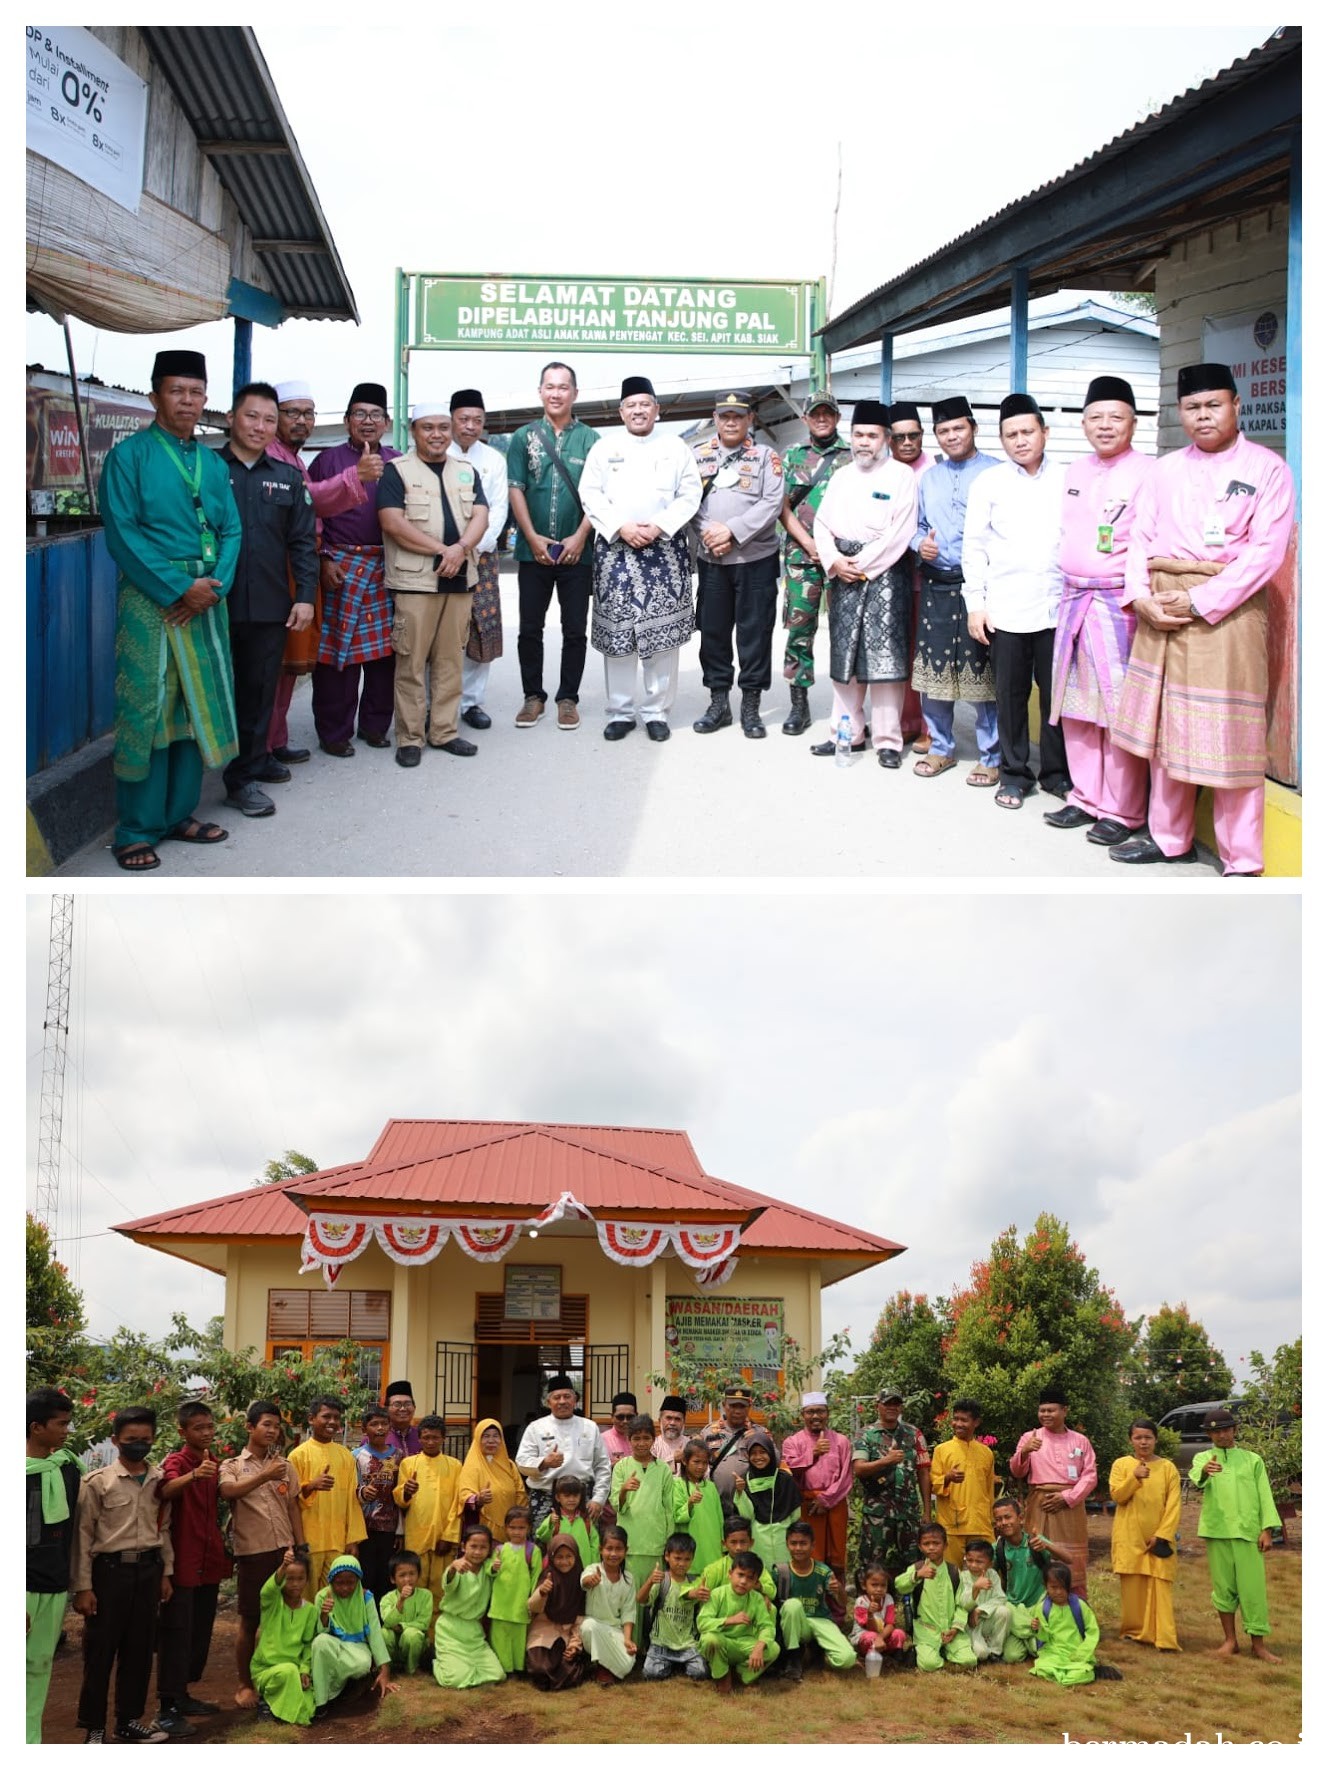 Peduli Pendidikan Masyarakat, Bupati Siak Alfedri Tinjau Pembangunan SMP Tanjung Pal